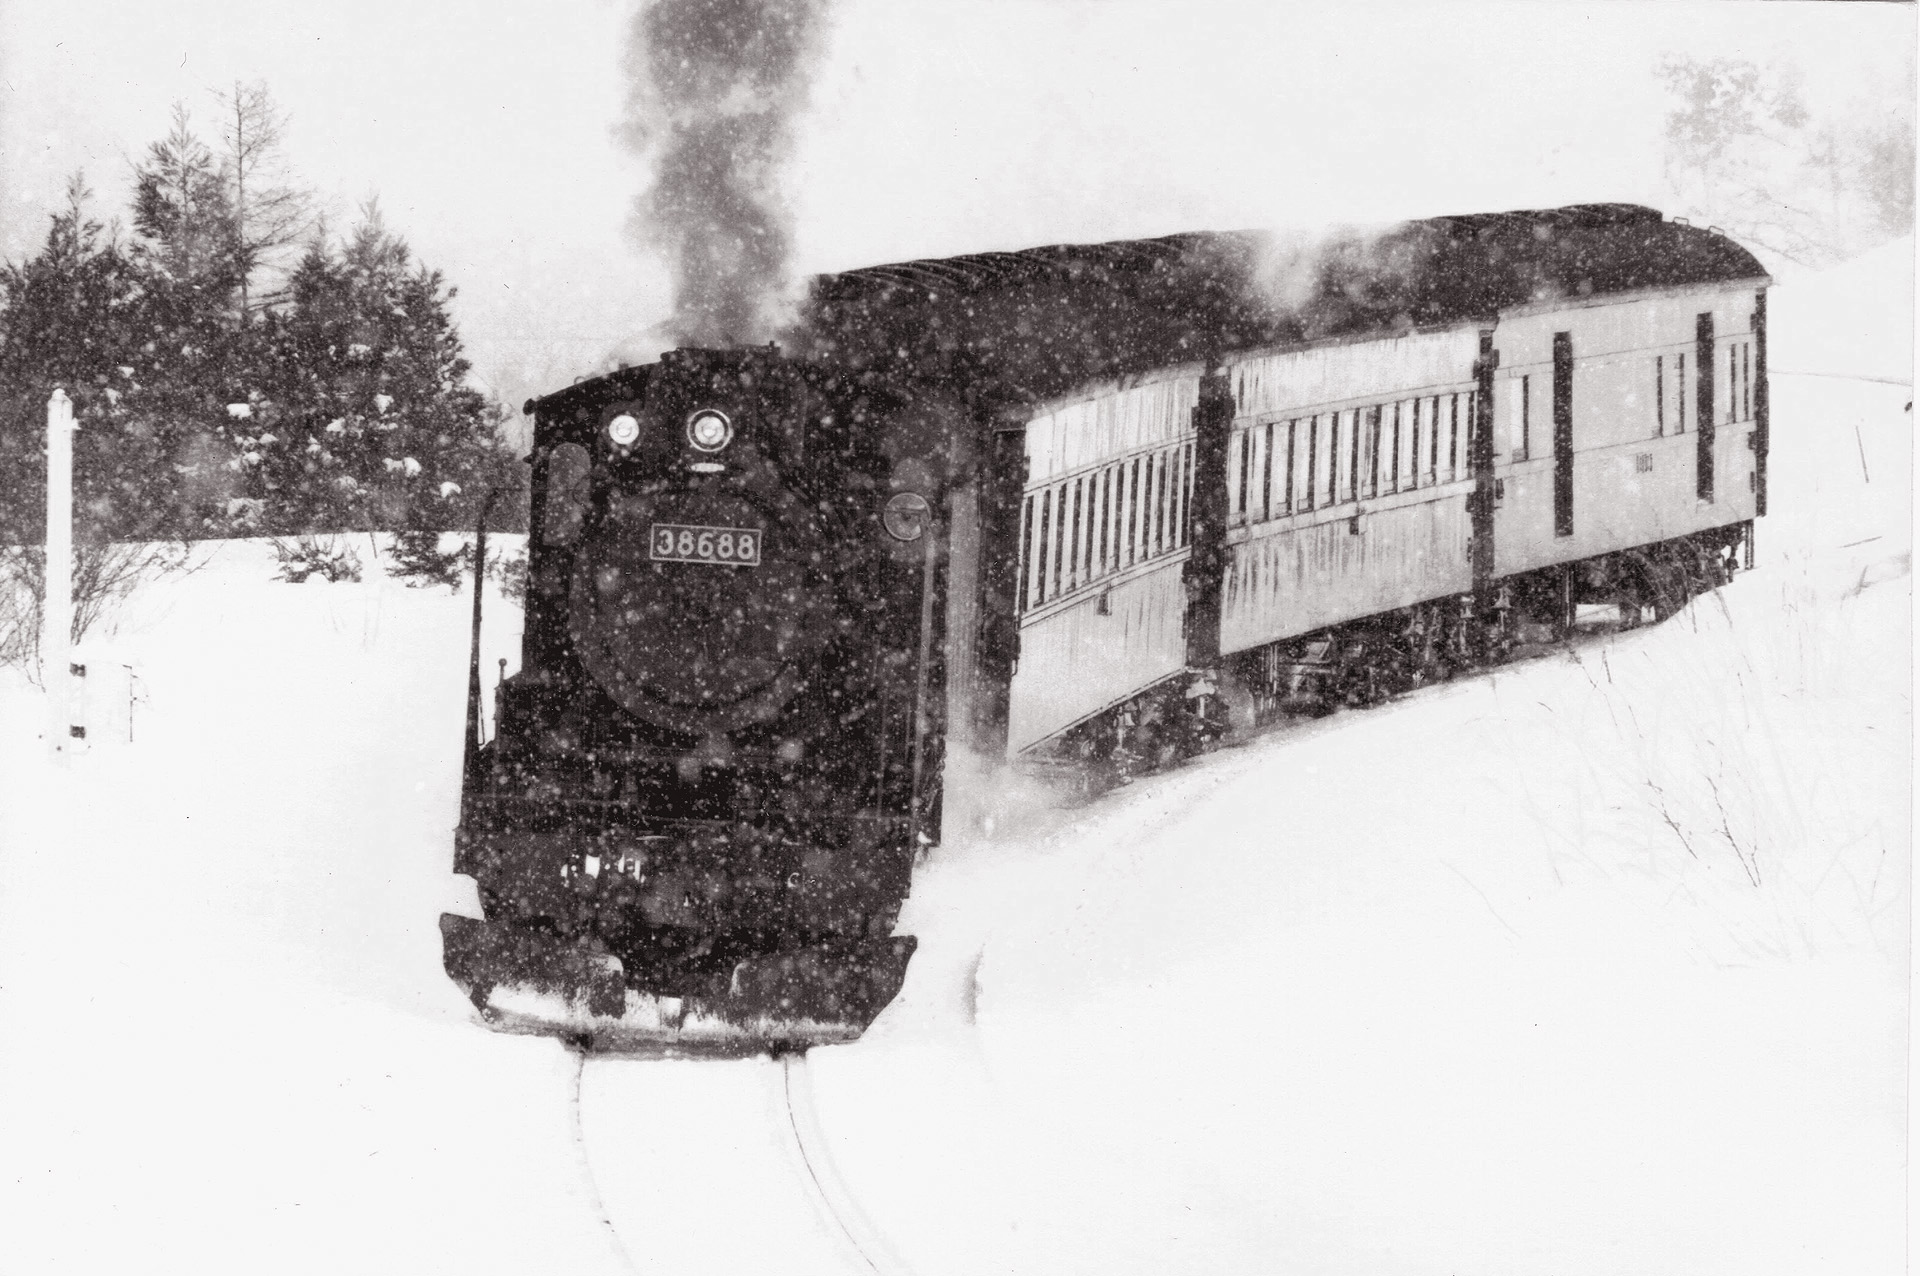 鉄道 蒸気機関車 雪の中を走る 2 セピア色の 壁紙19x1276 壁紙館